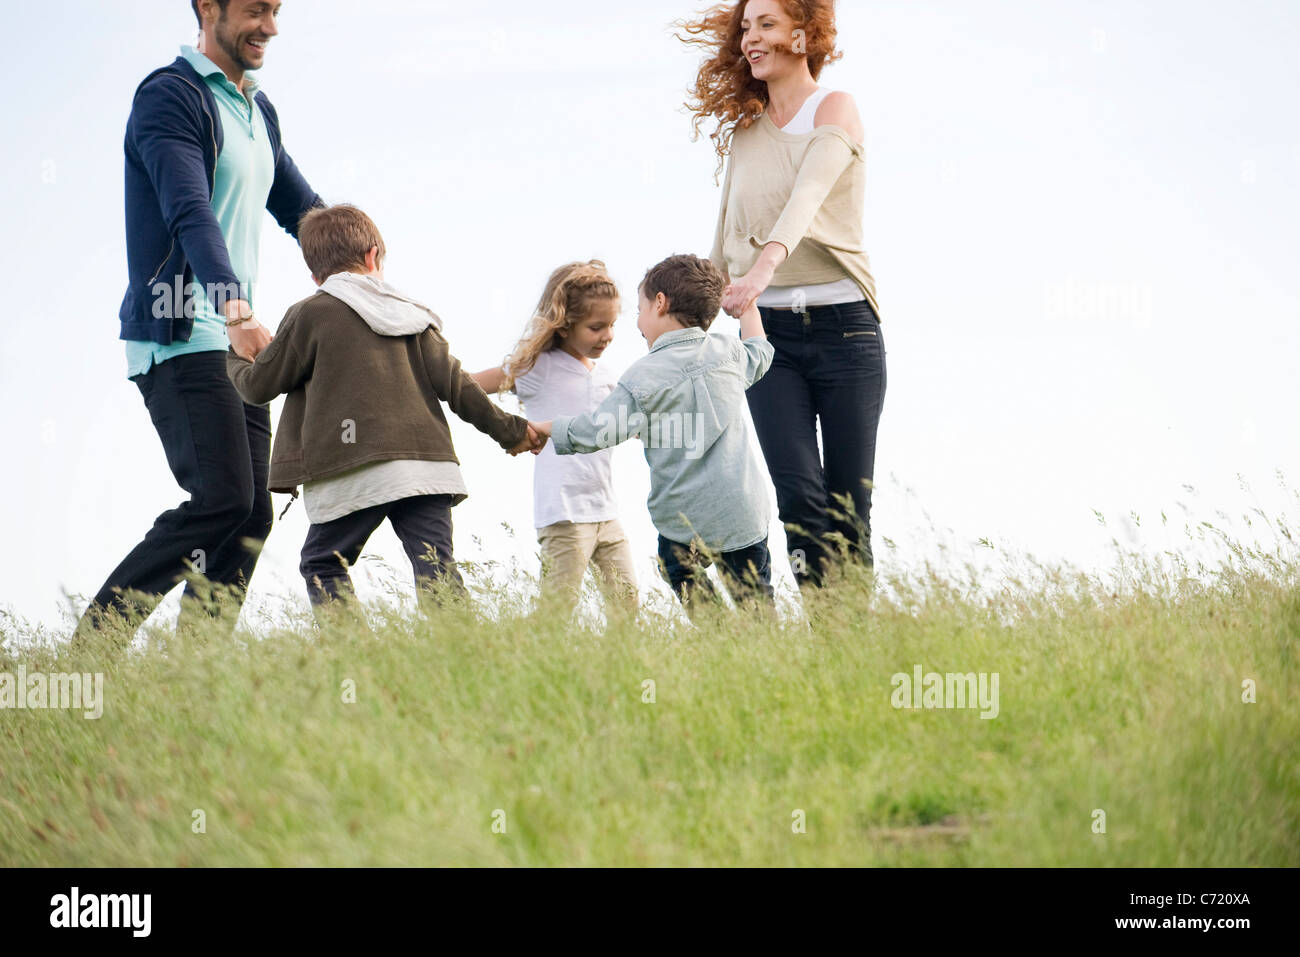 Familia jugando el anillo alrededor del color de rosa en el prado Foto de stock